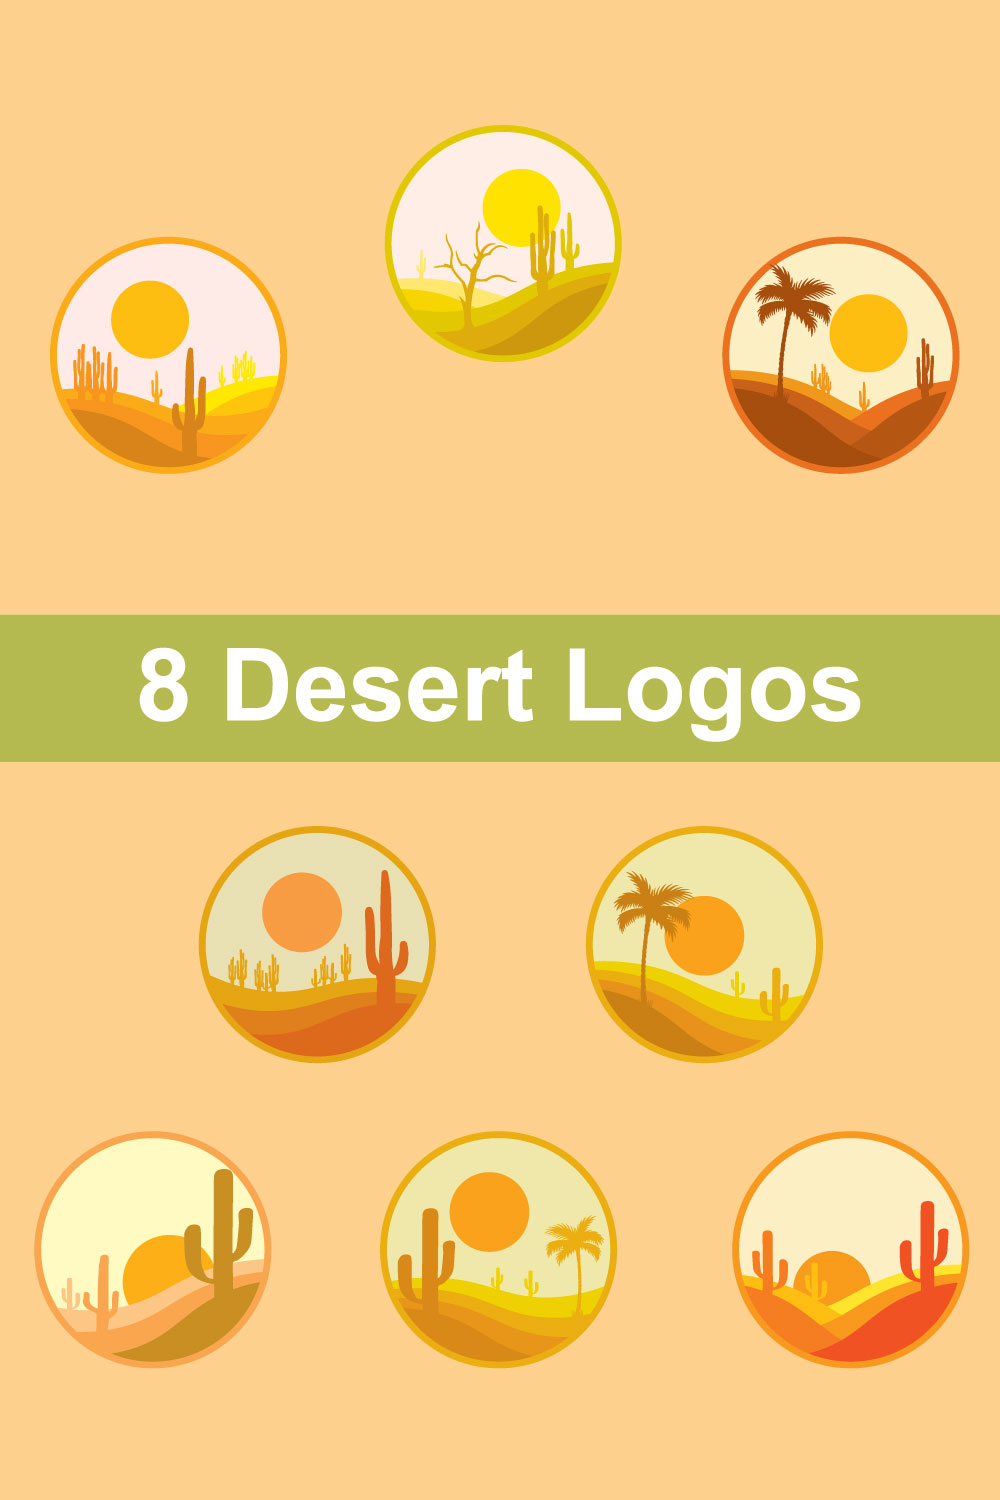 8 Desert Logos pinterest preview image.